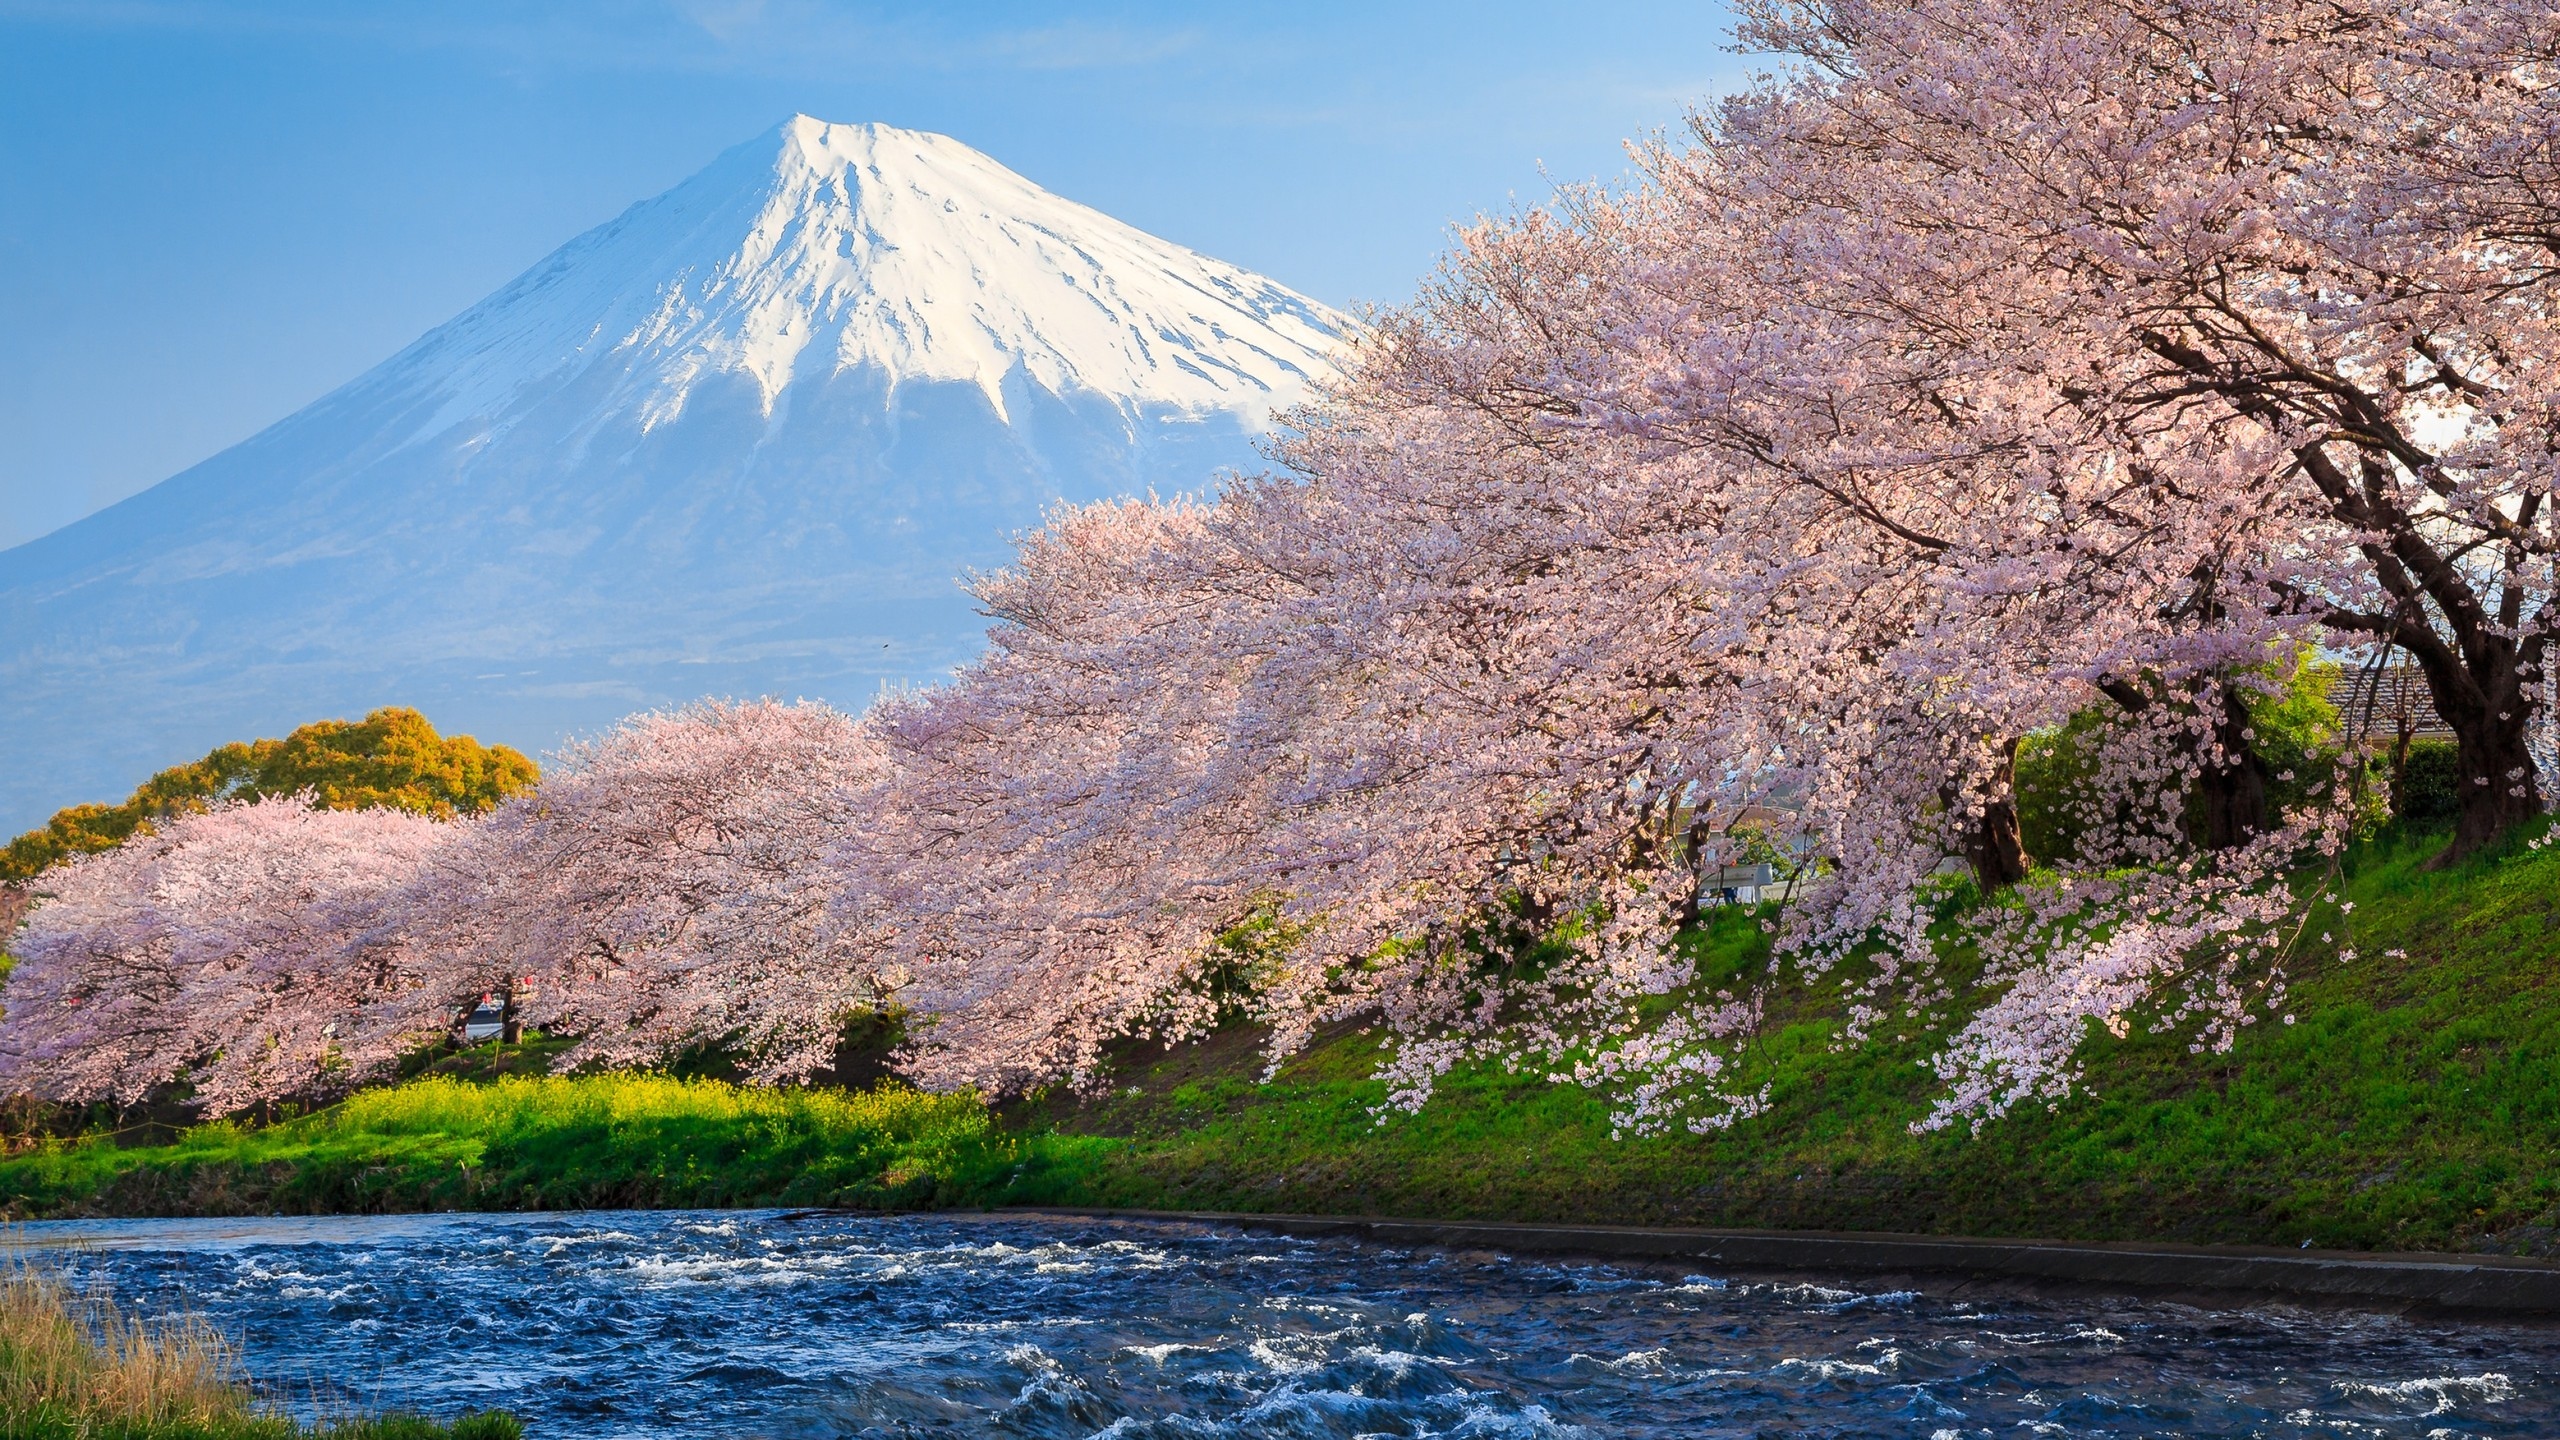 Wiosna, Okwiecone, Drzewa, Rzeka, Stratowulkan Fudżi, Góra, Mount Fuji, Japonia